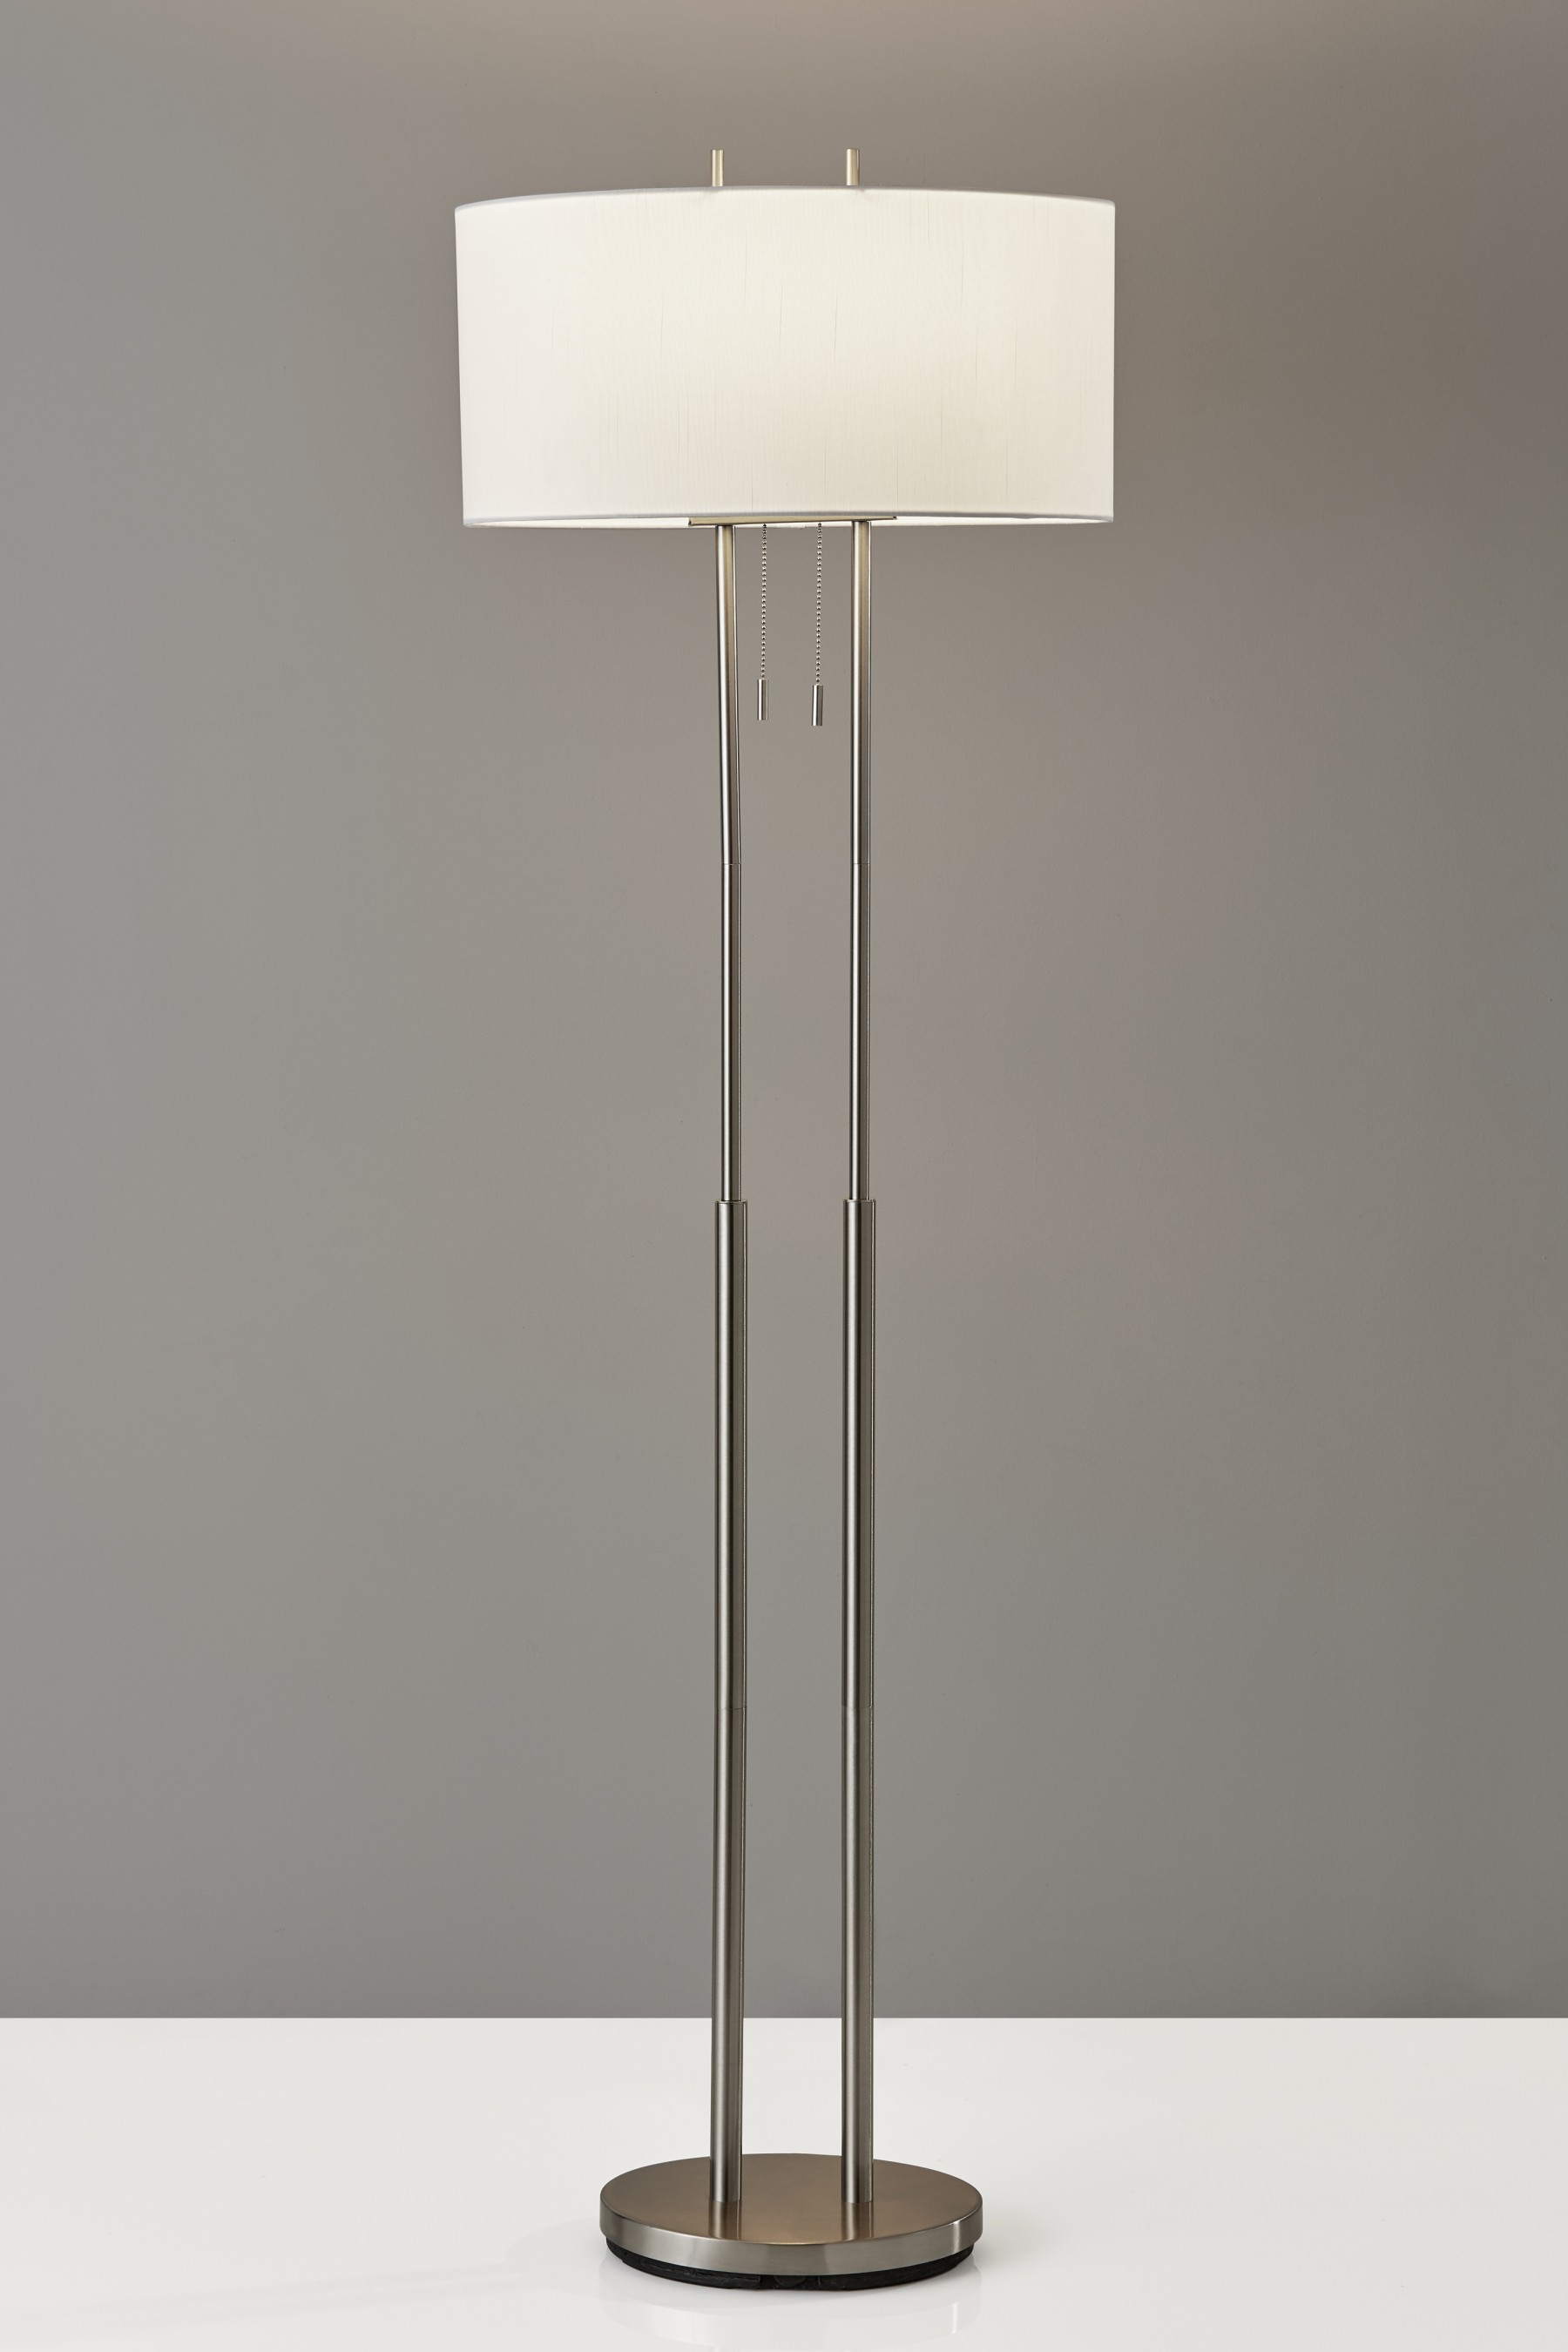 Duet Floor Lamp Adesso regarding dimensions 1800 X 2700